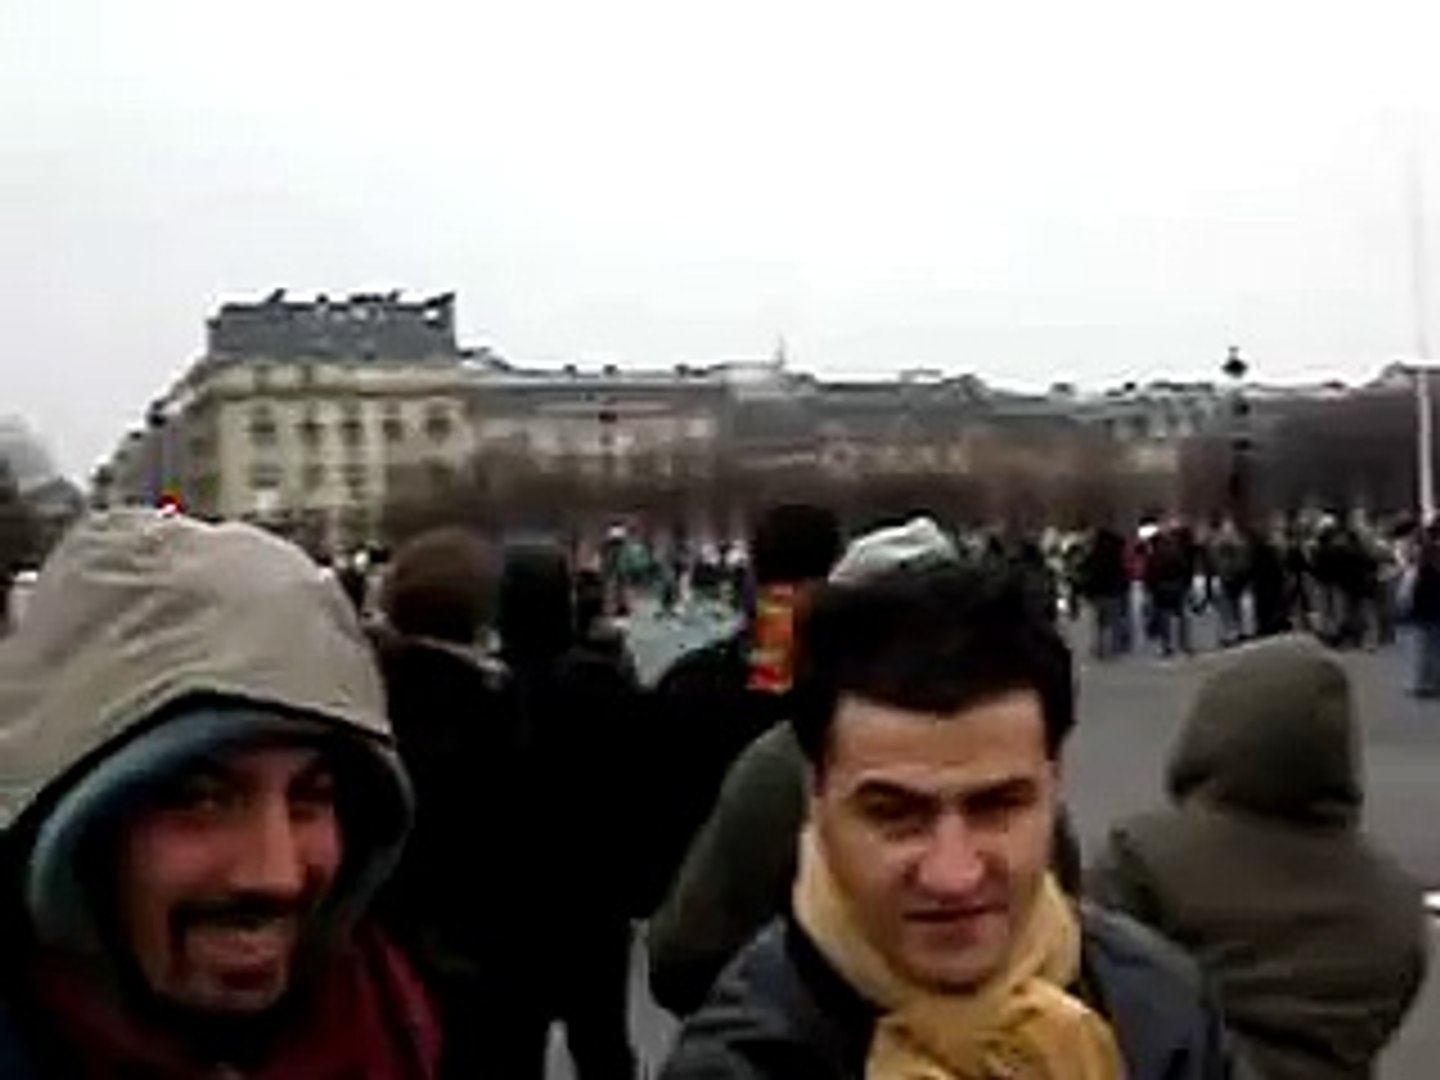 Paris Riots